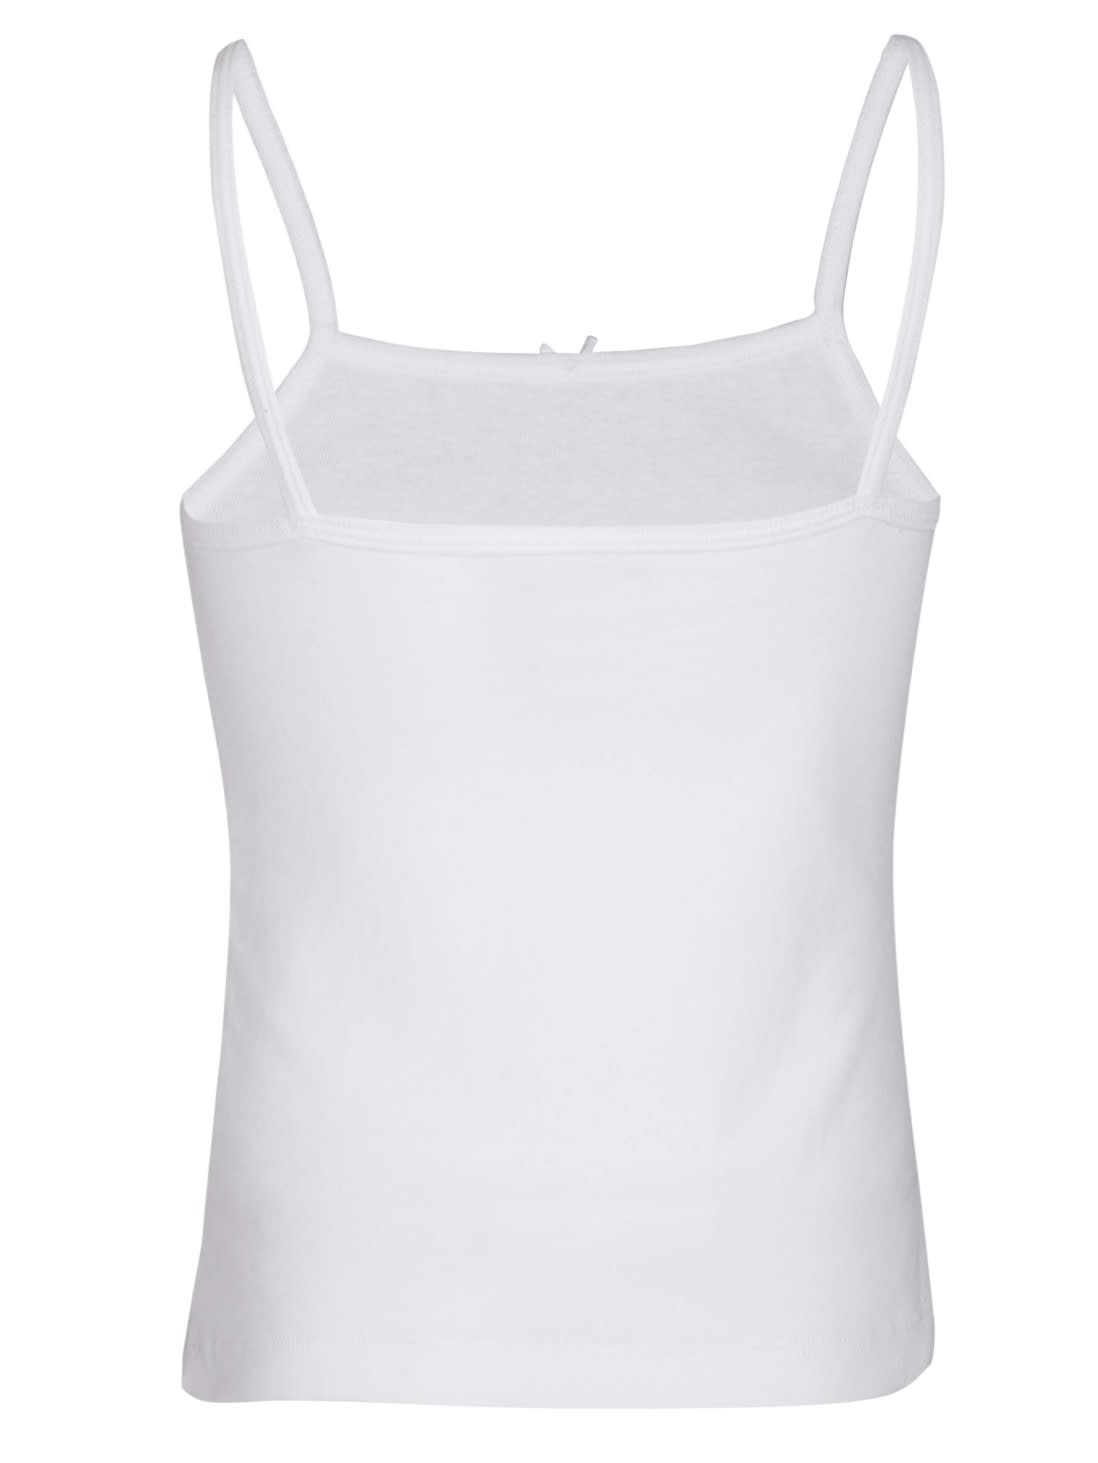 Buy Juniors Camisoles Girls Underwear SG04 White |Jockey India